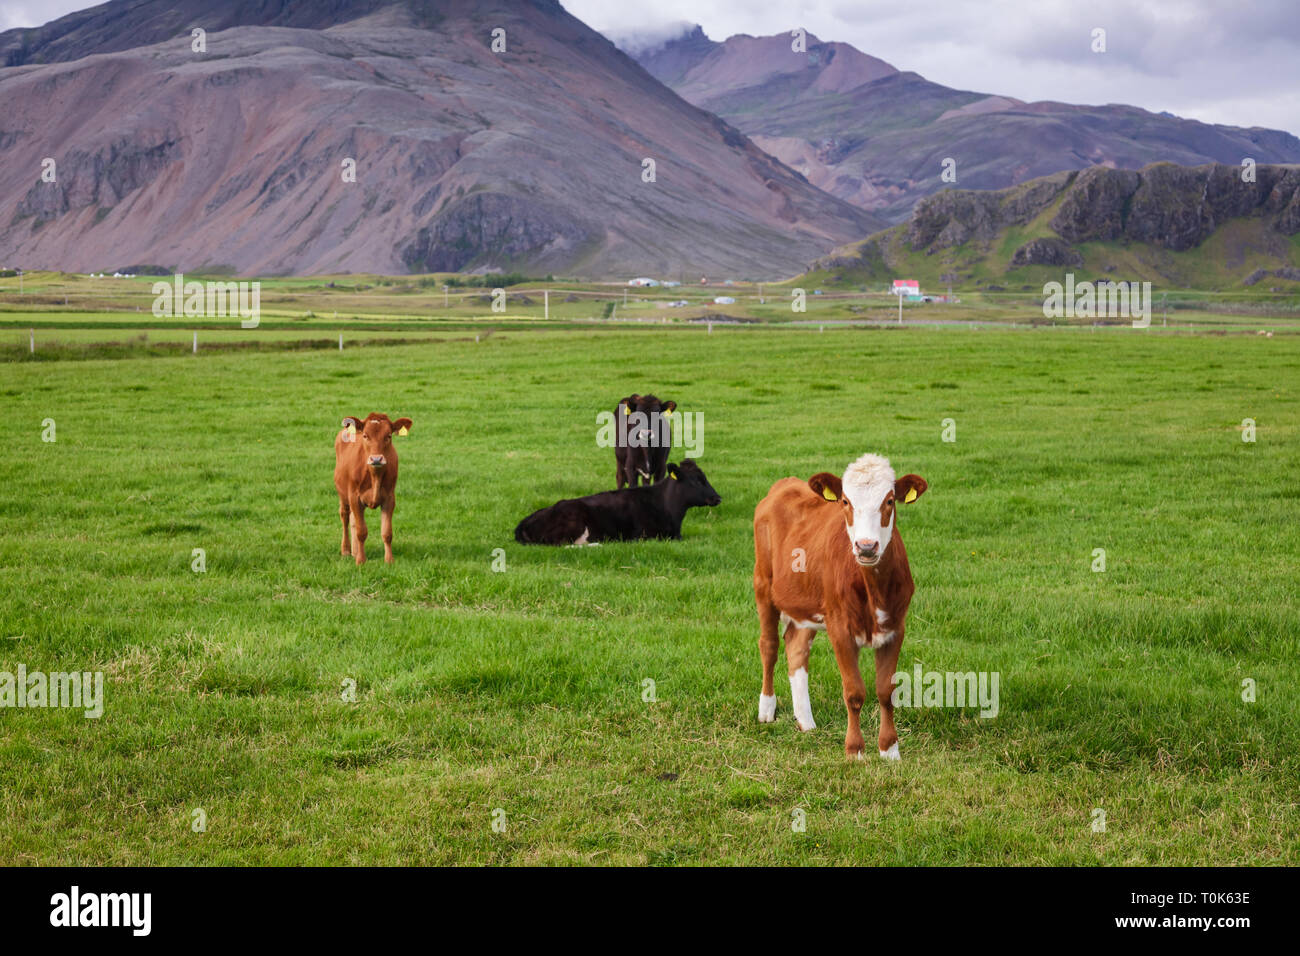 Isländische Landschaft mit freier Bereich Rinder grasen in einer Weide unter düsteren Himmel mit kleinen Bauernhof und vulkanischen Berg im Hintergrund - rauhe agr Stockfoto